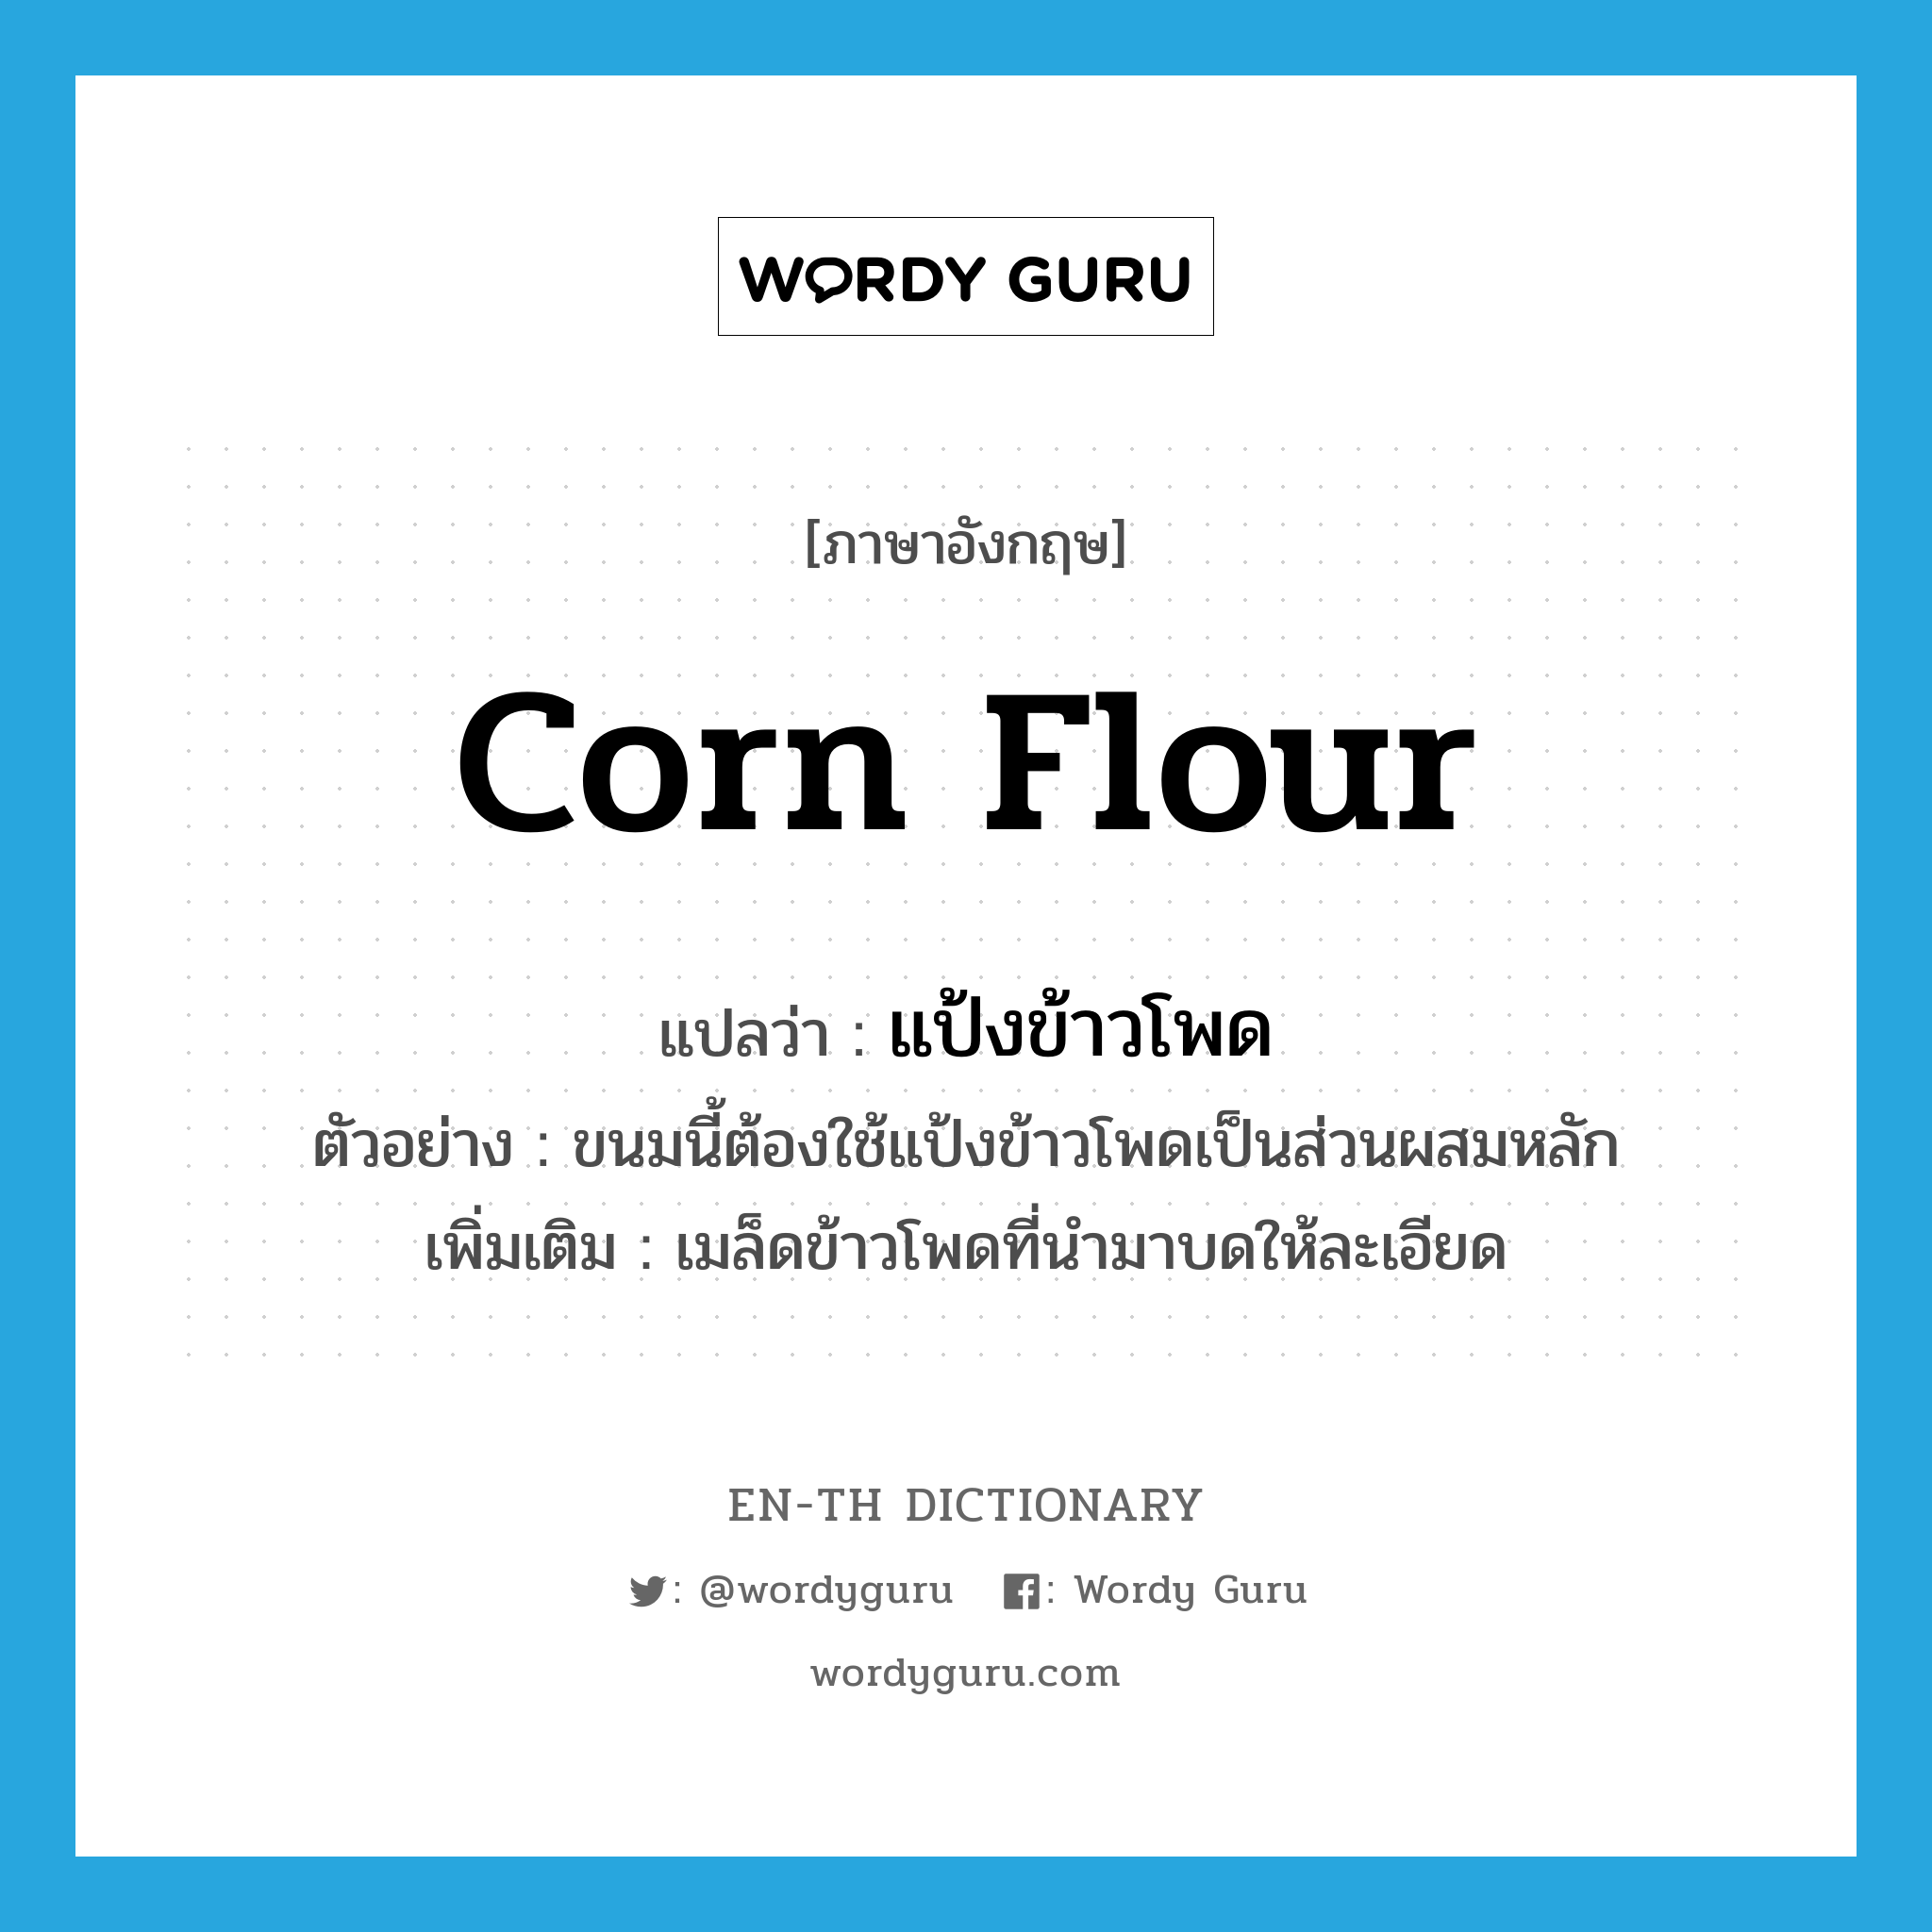 corn flour แปลว่า?, คำศัพท์ภาษาอังกฤษ corn flour แปลว่า แป้งข้าวโพด ประเภท N ตัวอย่าง ขนมนี้ต้องใช้แป้งข้าวโพดเป็นส่วนผสมหลัก เพิ่มเติม เมล็ดข้าวโพดที่นำมาบดให้ละเอียด หมวด N